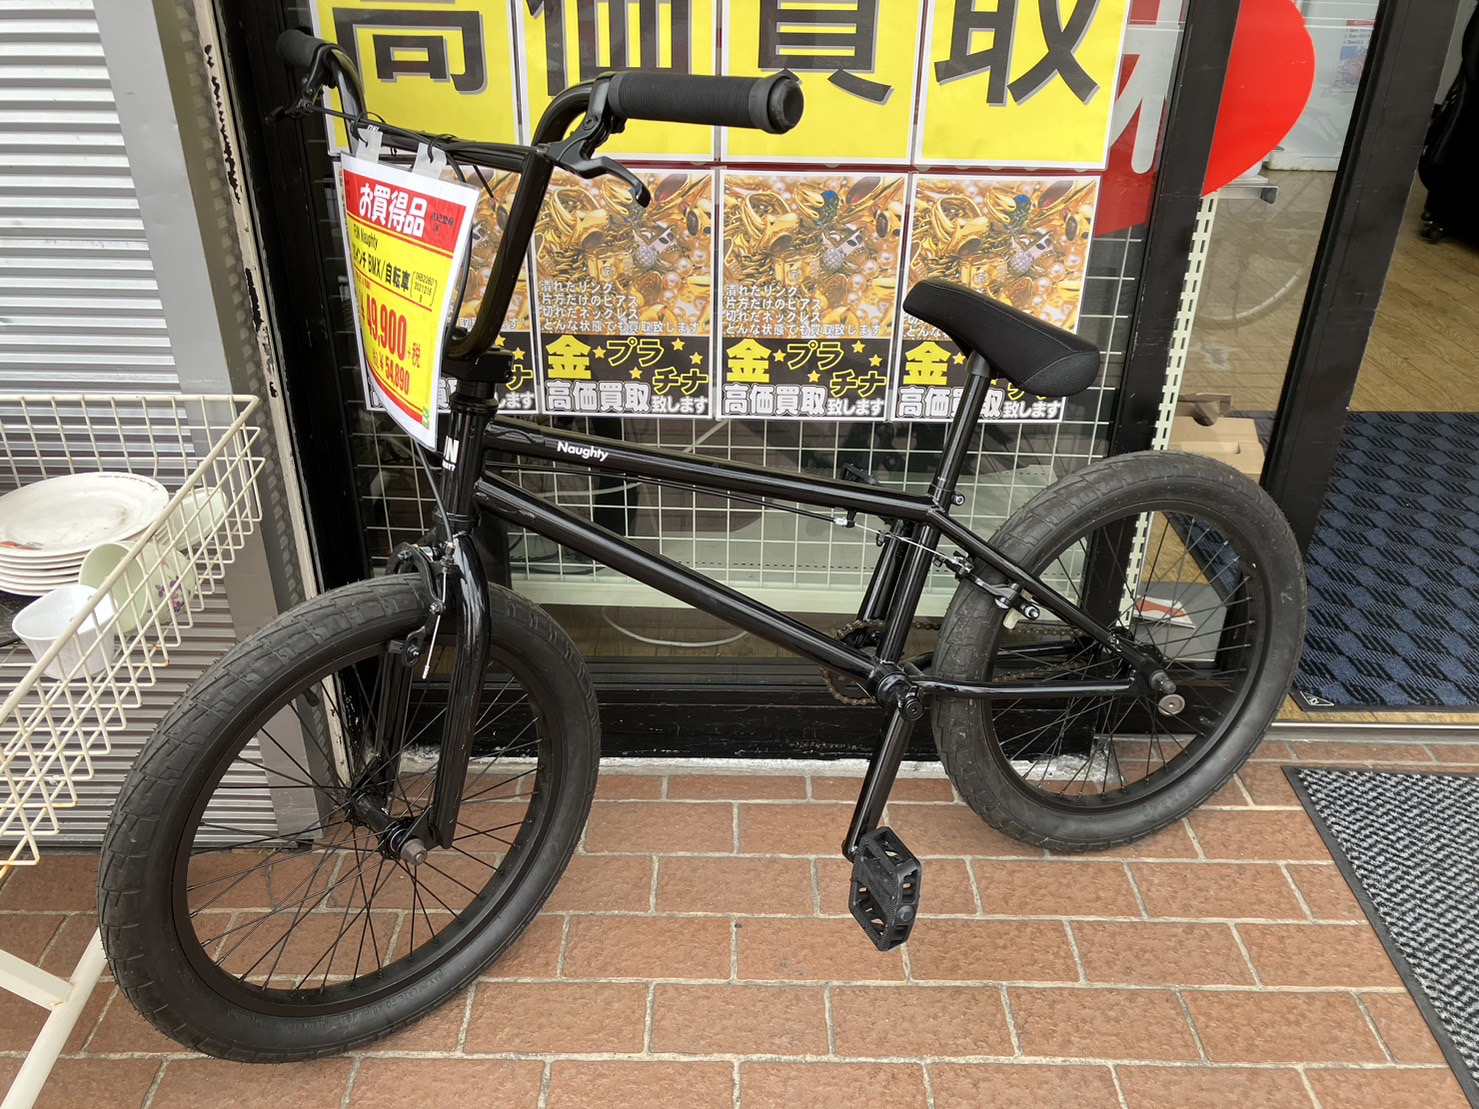 【FUN Naughty 20インチ BMX自転車】お買取りしました!⭐福岡市 南区 リサイクルショップ リサイクルマート大橋店⭐ - リサイクルマートは現在冷蔵庫の買取、家具の買取強化中です！お気軽にお問い合わせください。